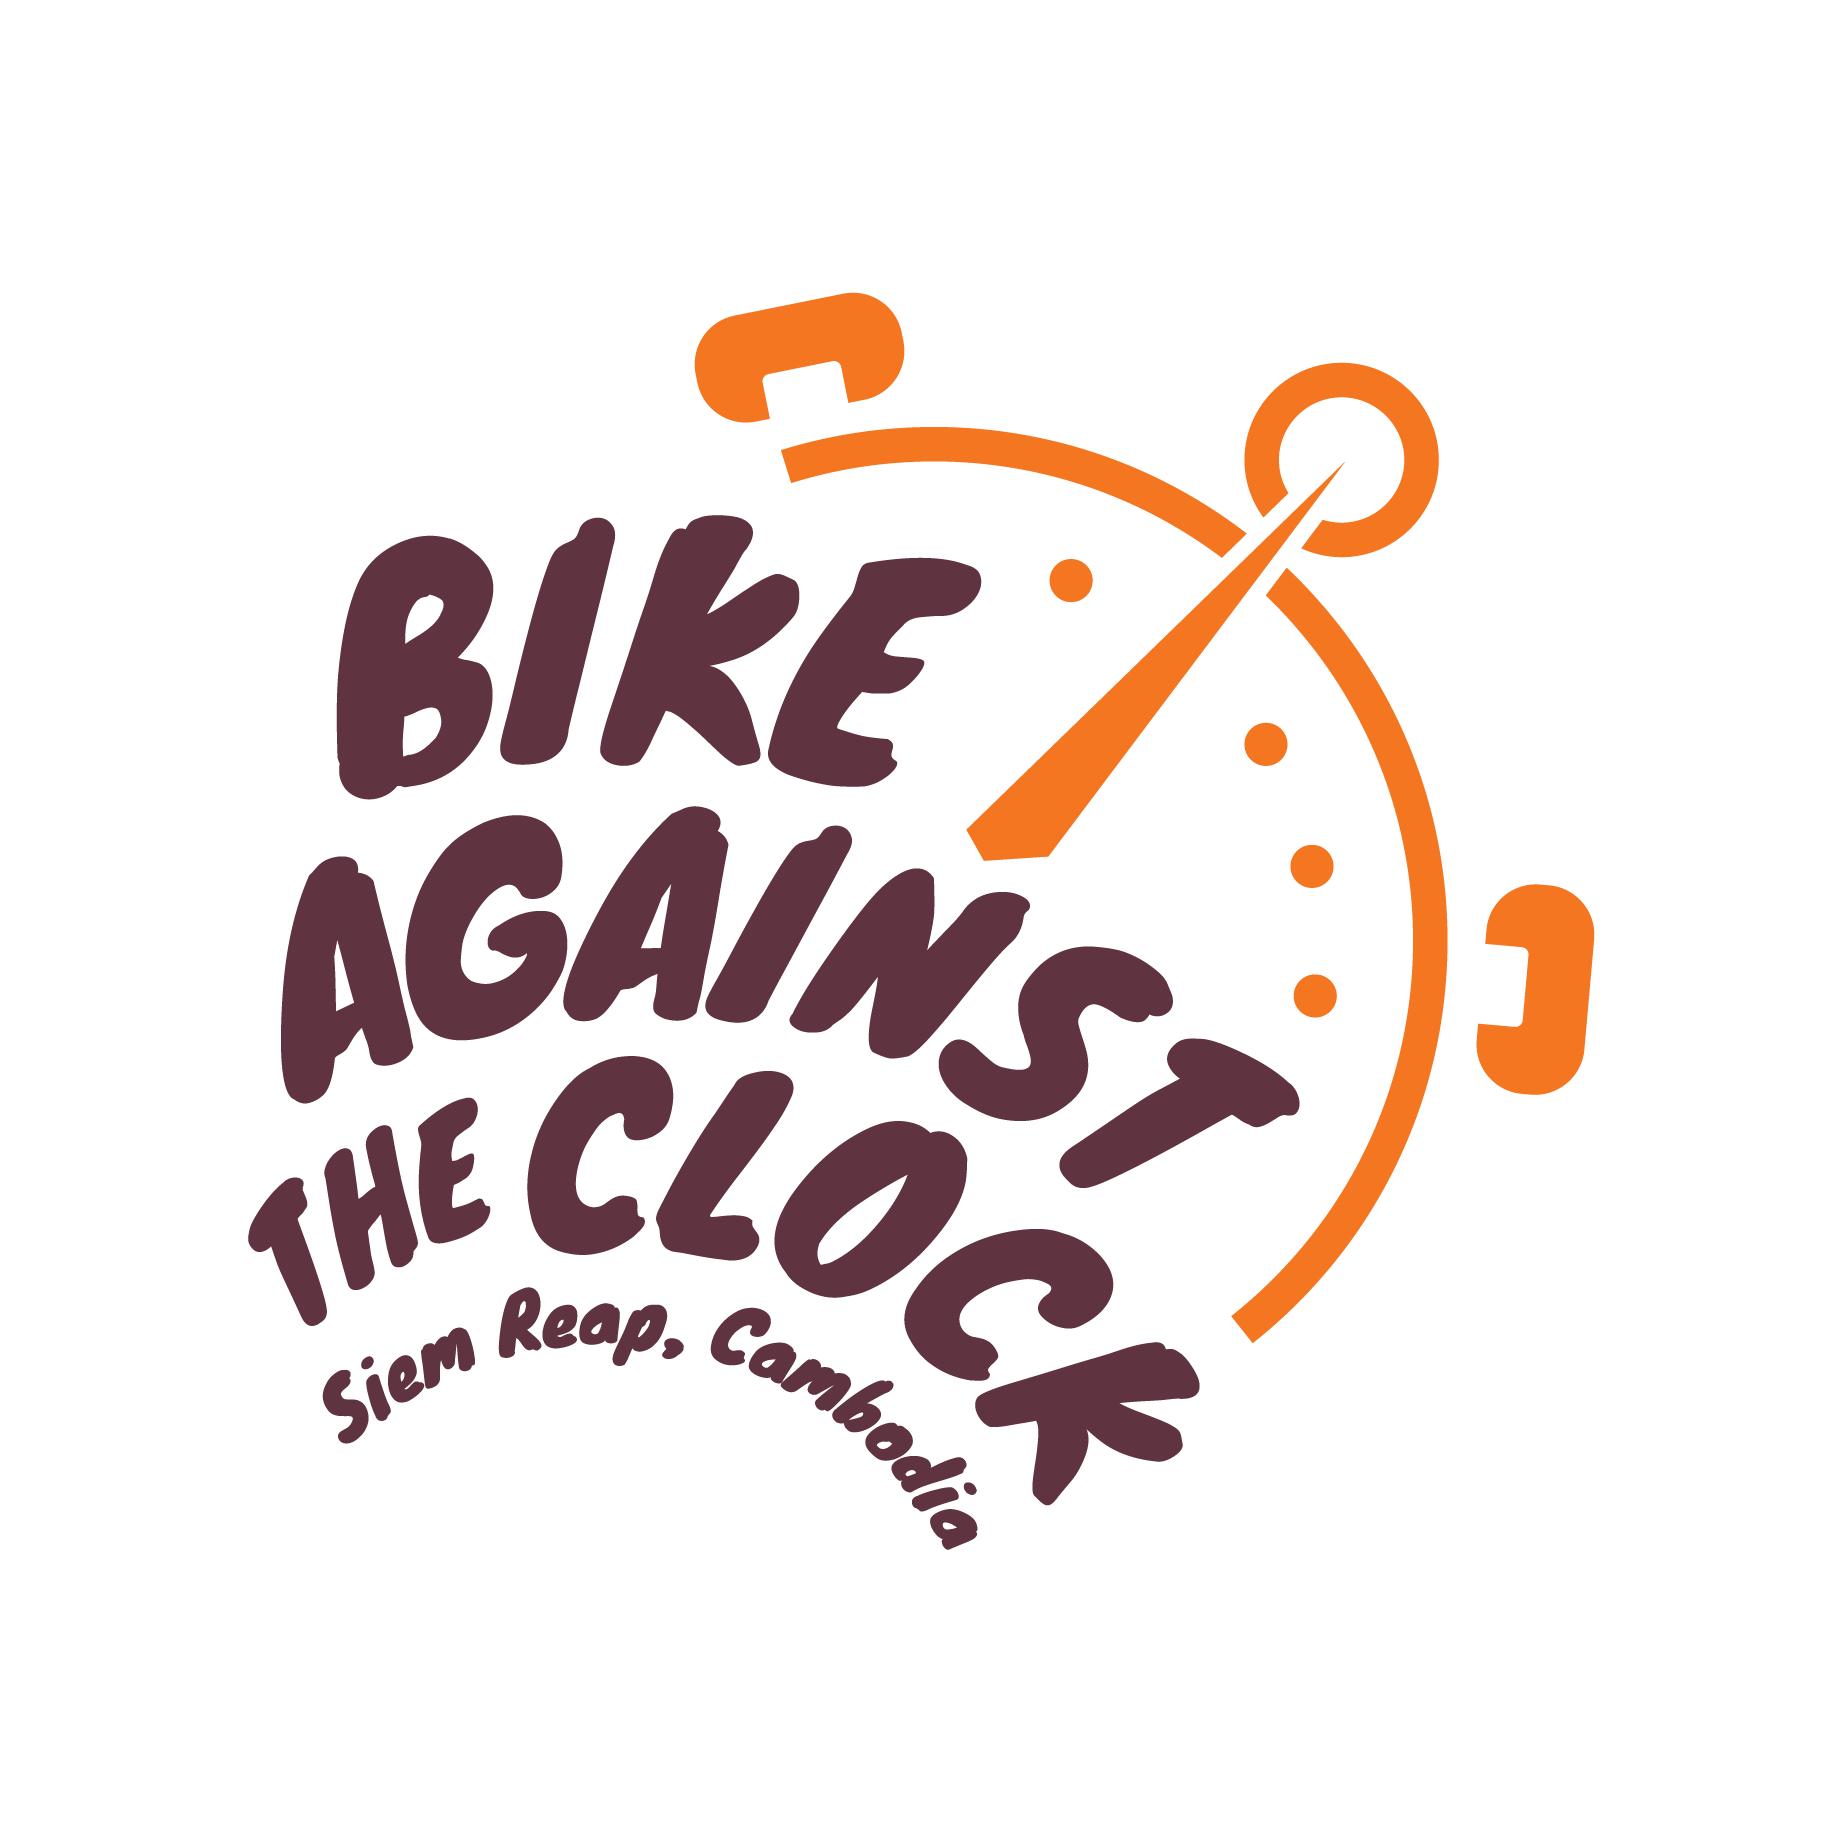 Bike Against the Clock Siem Reap Cambodia